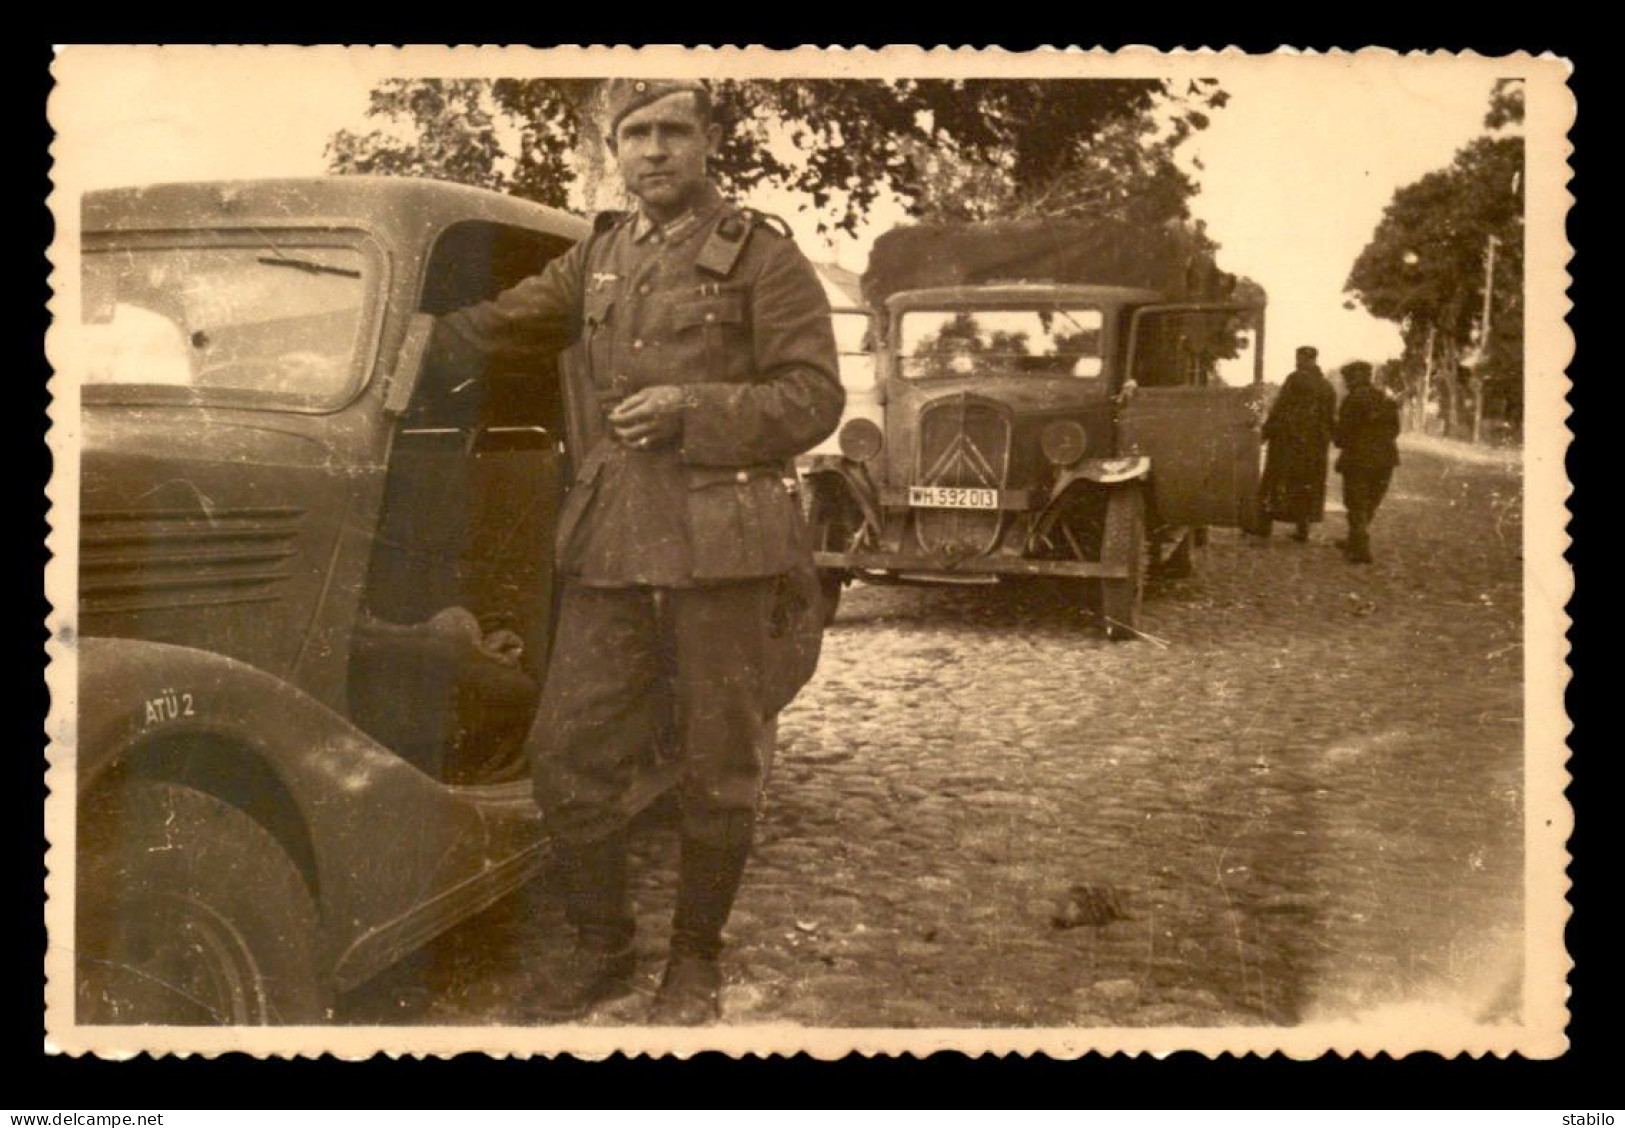 GUERRE 39/45 - SOLDAT ALLEMAND UTILISANT DES VEHICULES FRANCAIS - CARTE PHOTO ORIGINALE - War 1939-45